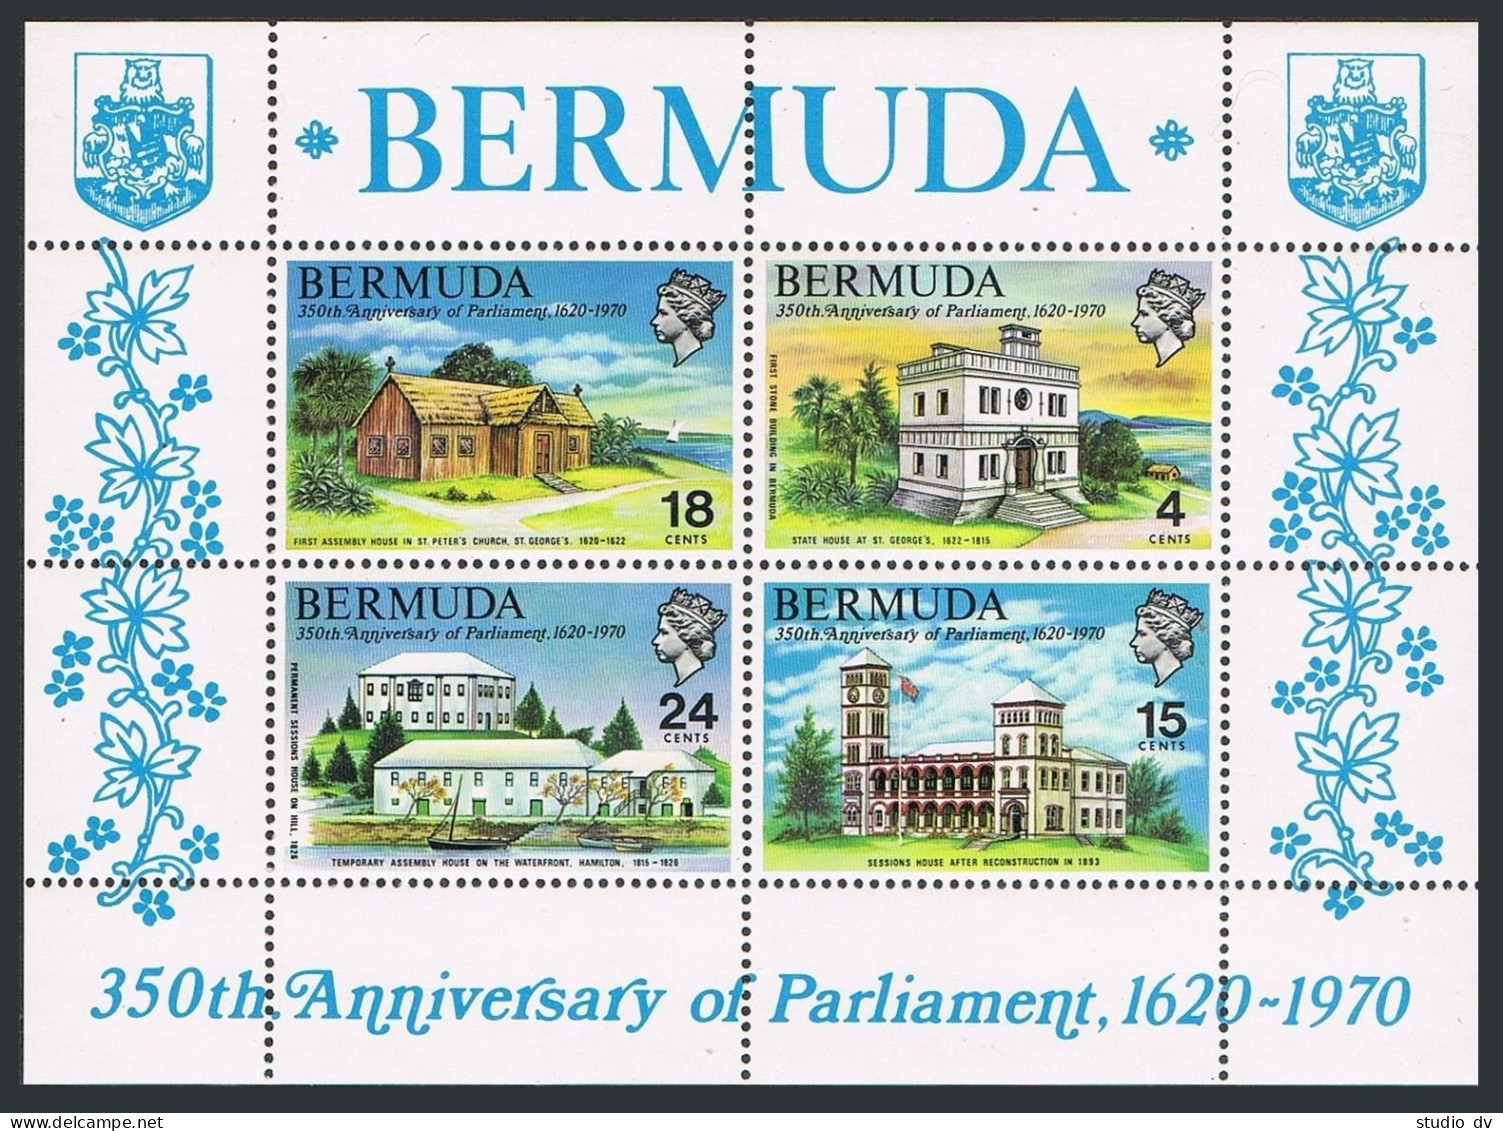 Bermuda 272-275,275a,MNH.Michel 261-264,Bl.1. Bermudas Parliament,350,1970.Ship. - Bermudes